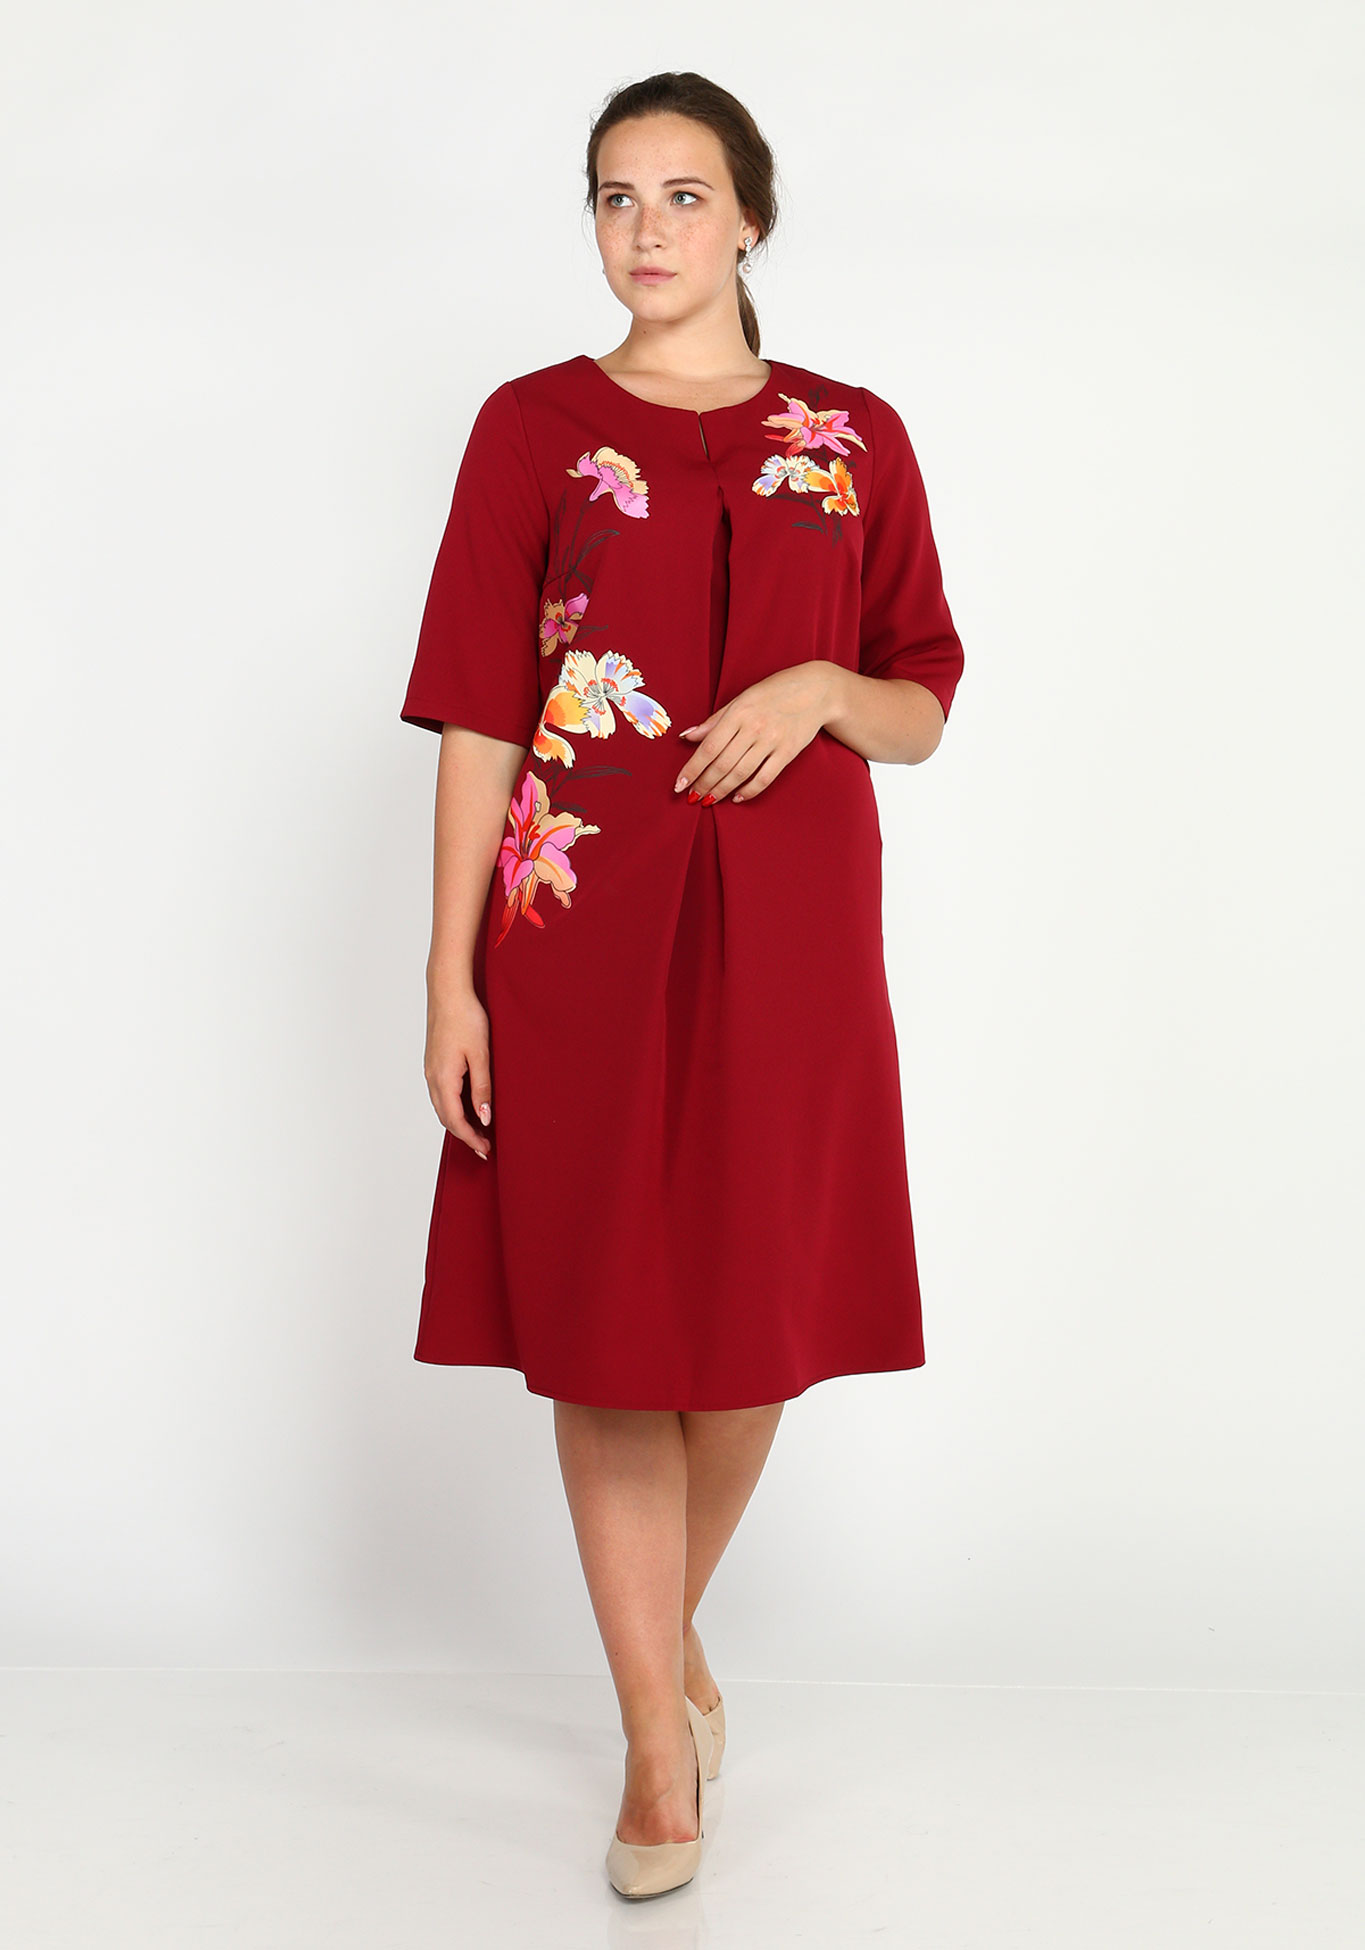 Платье-миди с шелкографией Victoria, размер 54, цвет красный - фото 1